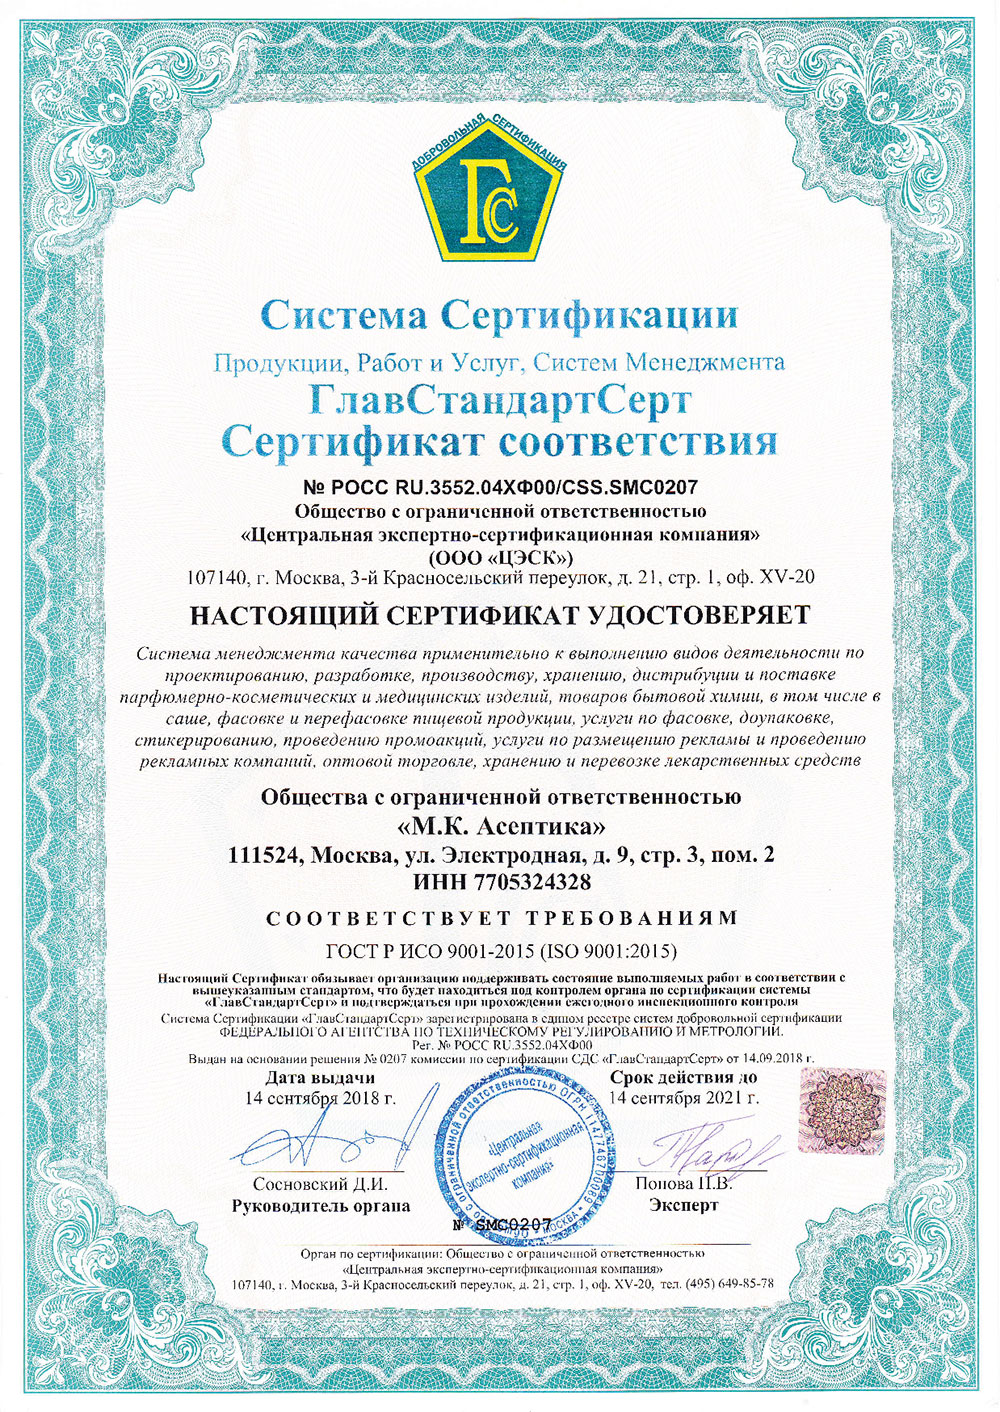 GlavStandardCert — Certificate of Conformity